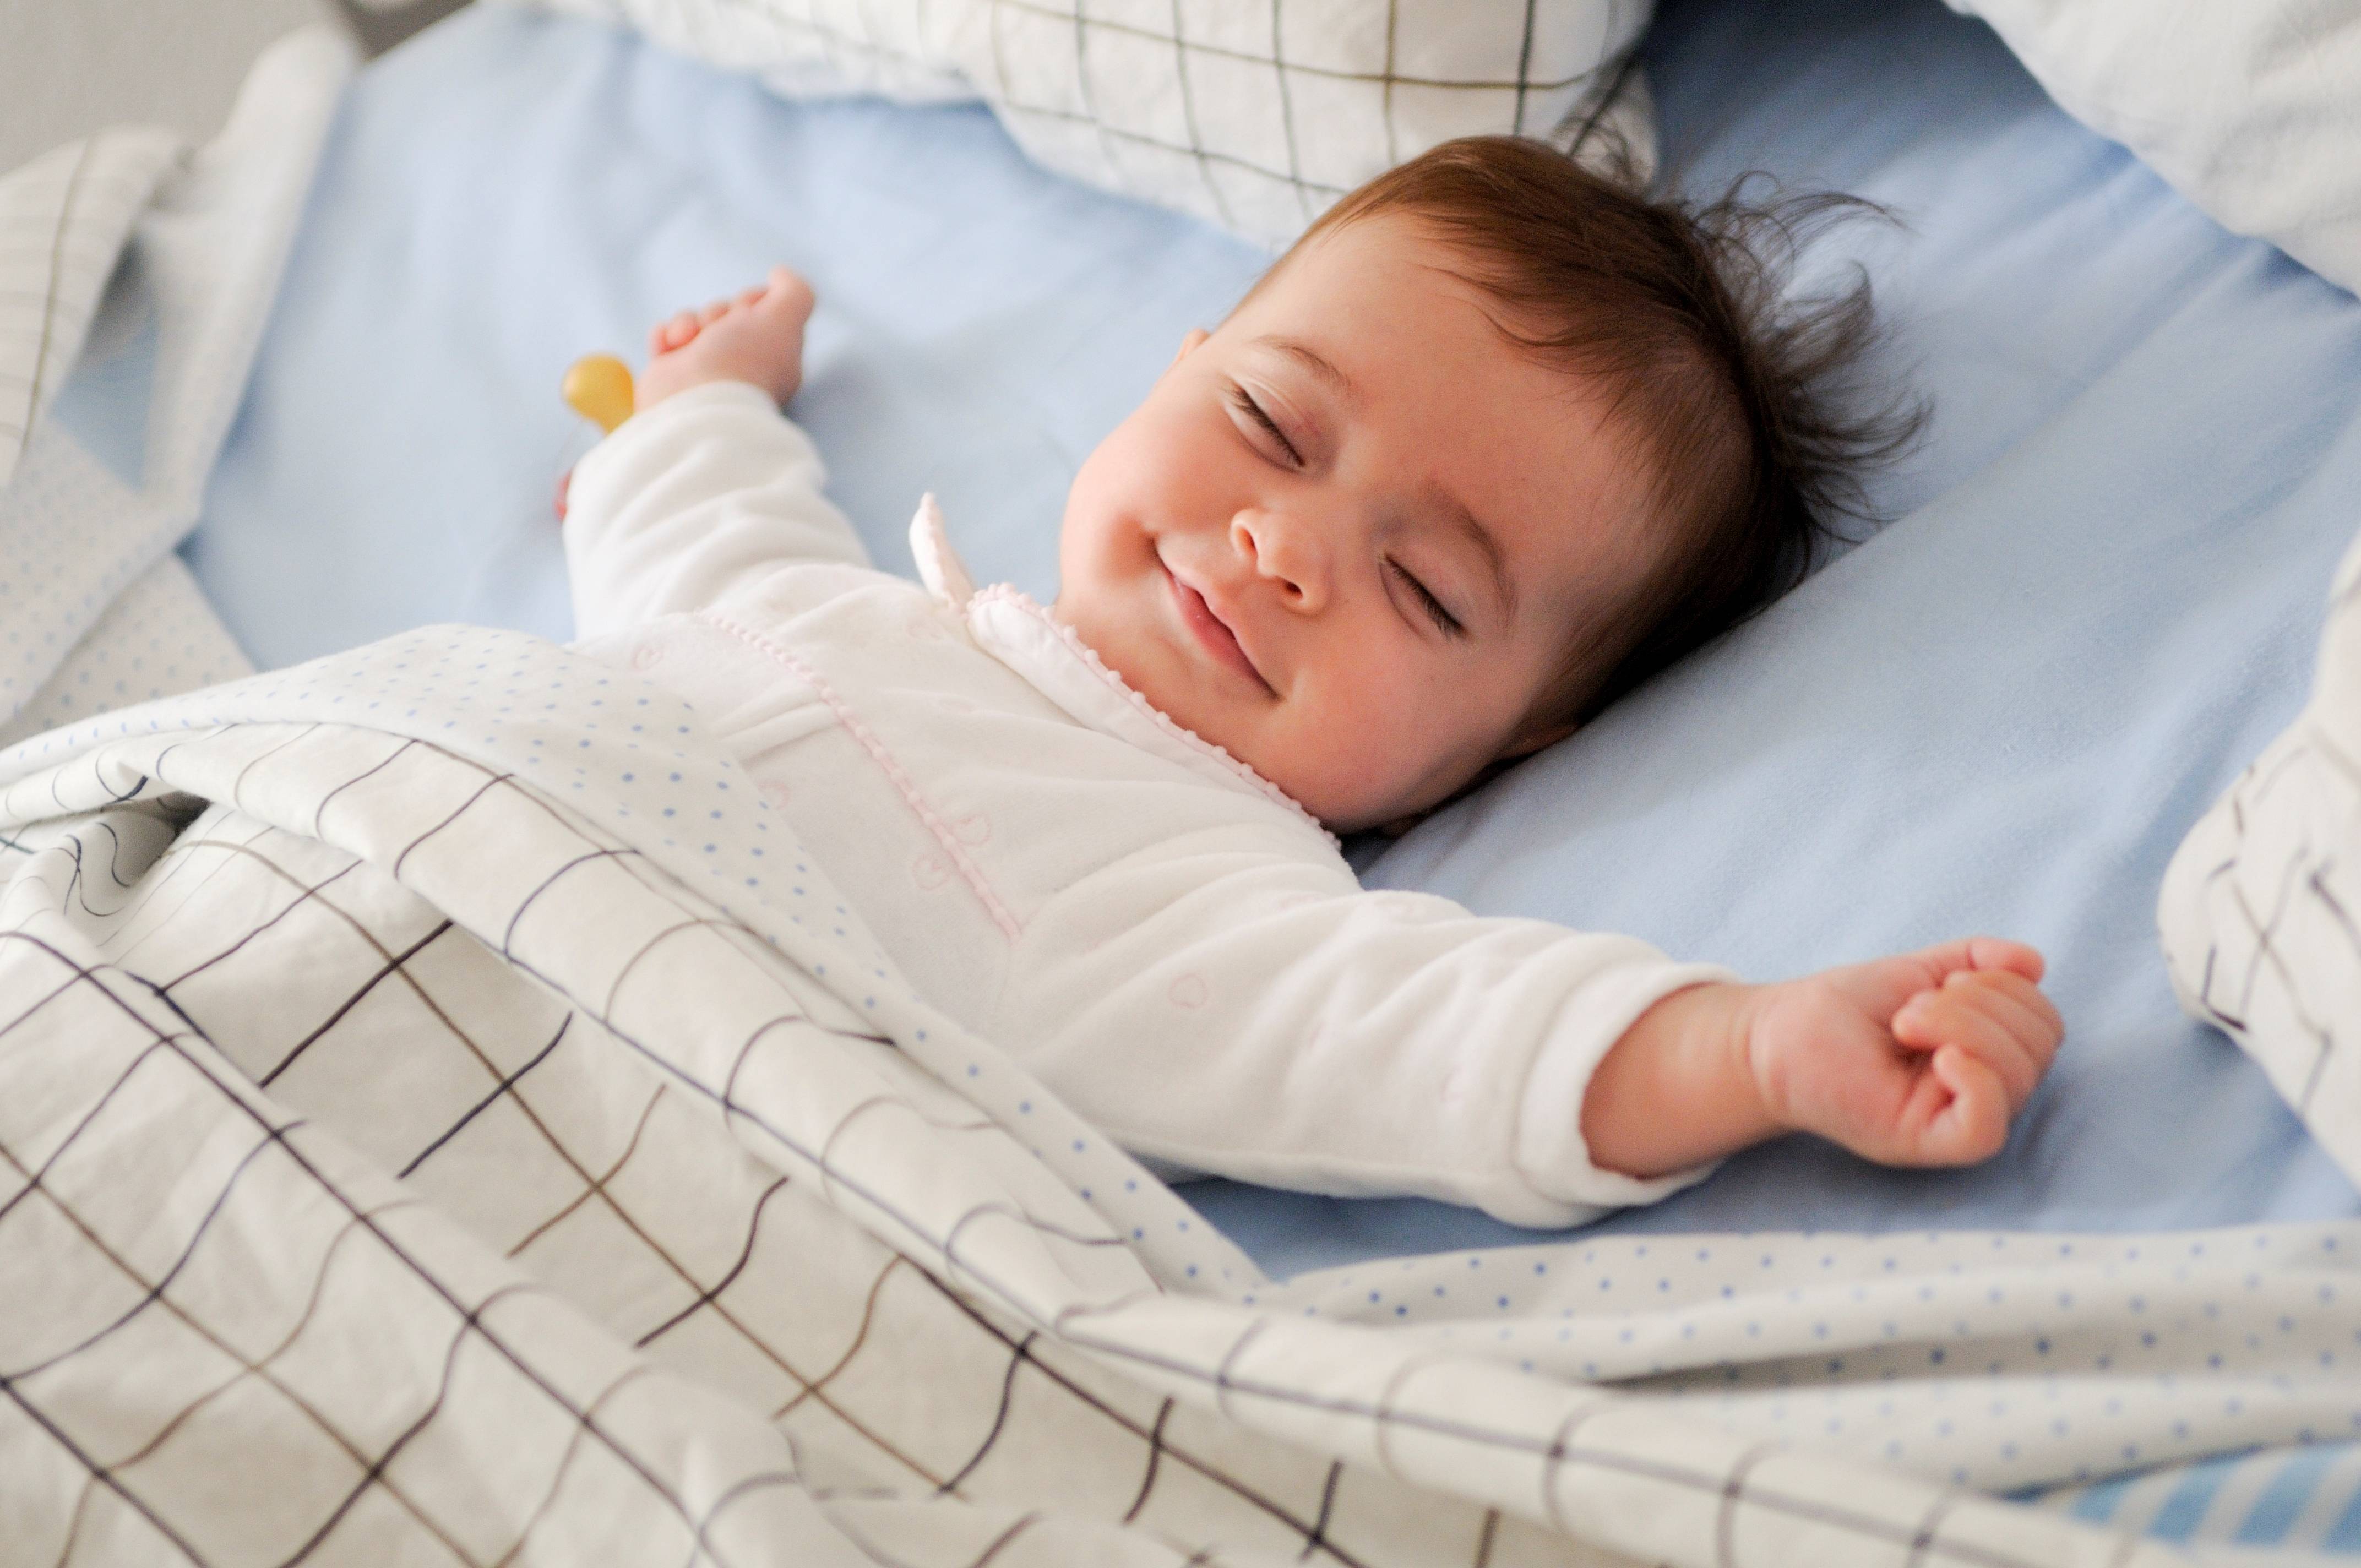 Почему дети должны высыпаться: сон сохраняет психическое здоровье | университетская клиника